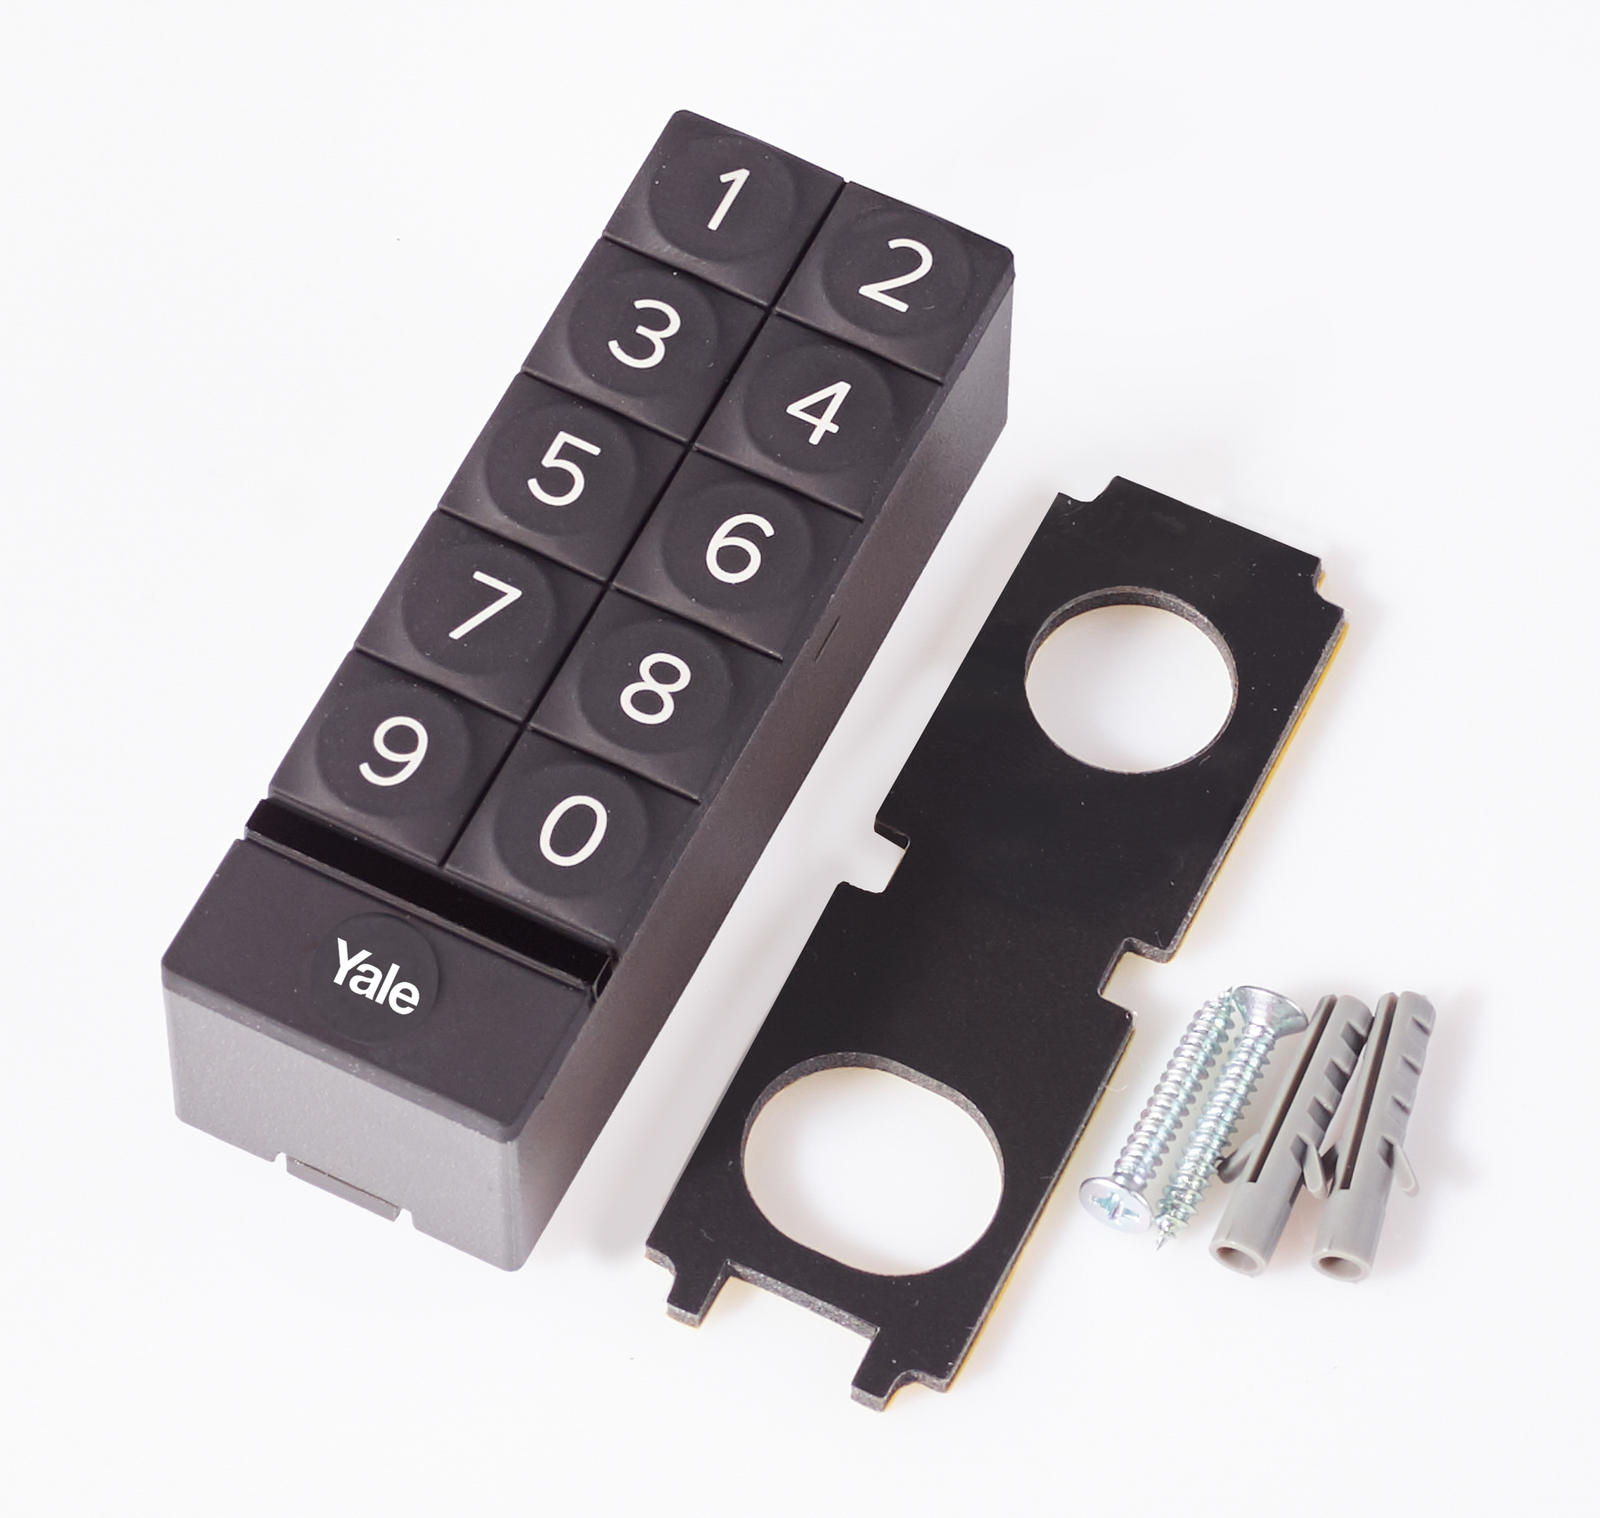 Yale Smart Keypad, tastefelt for adgangskode